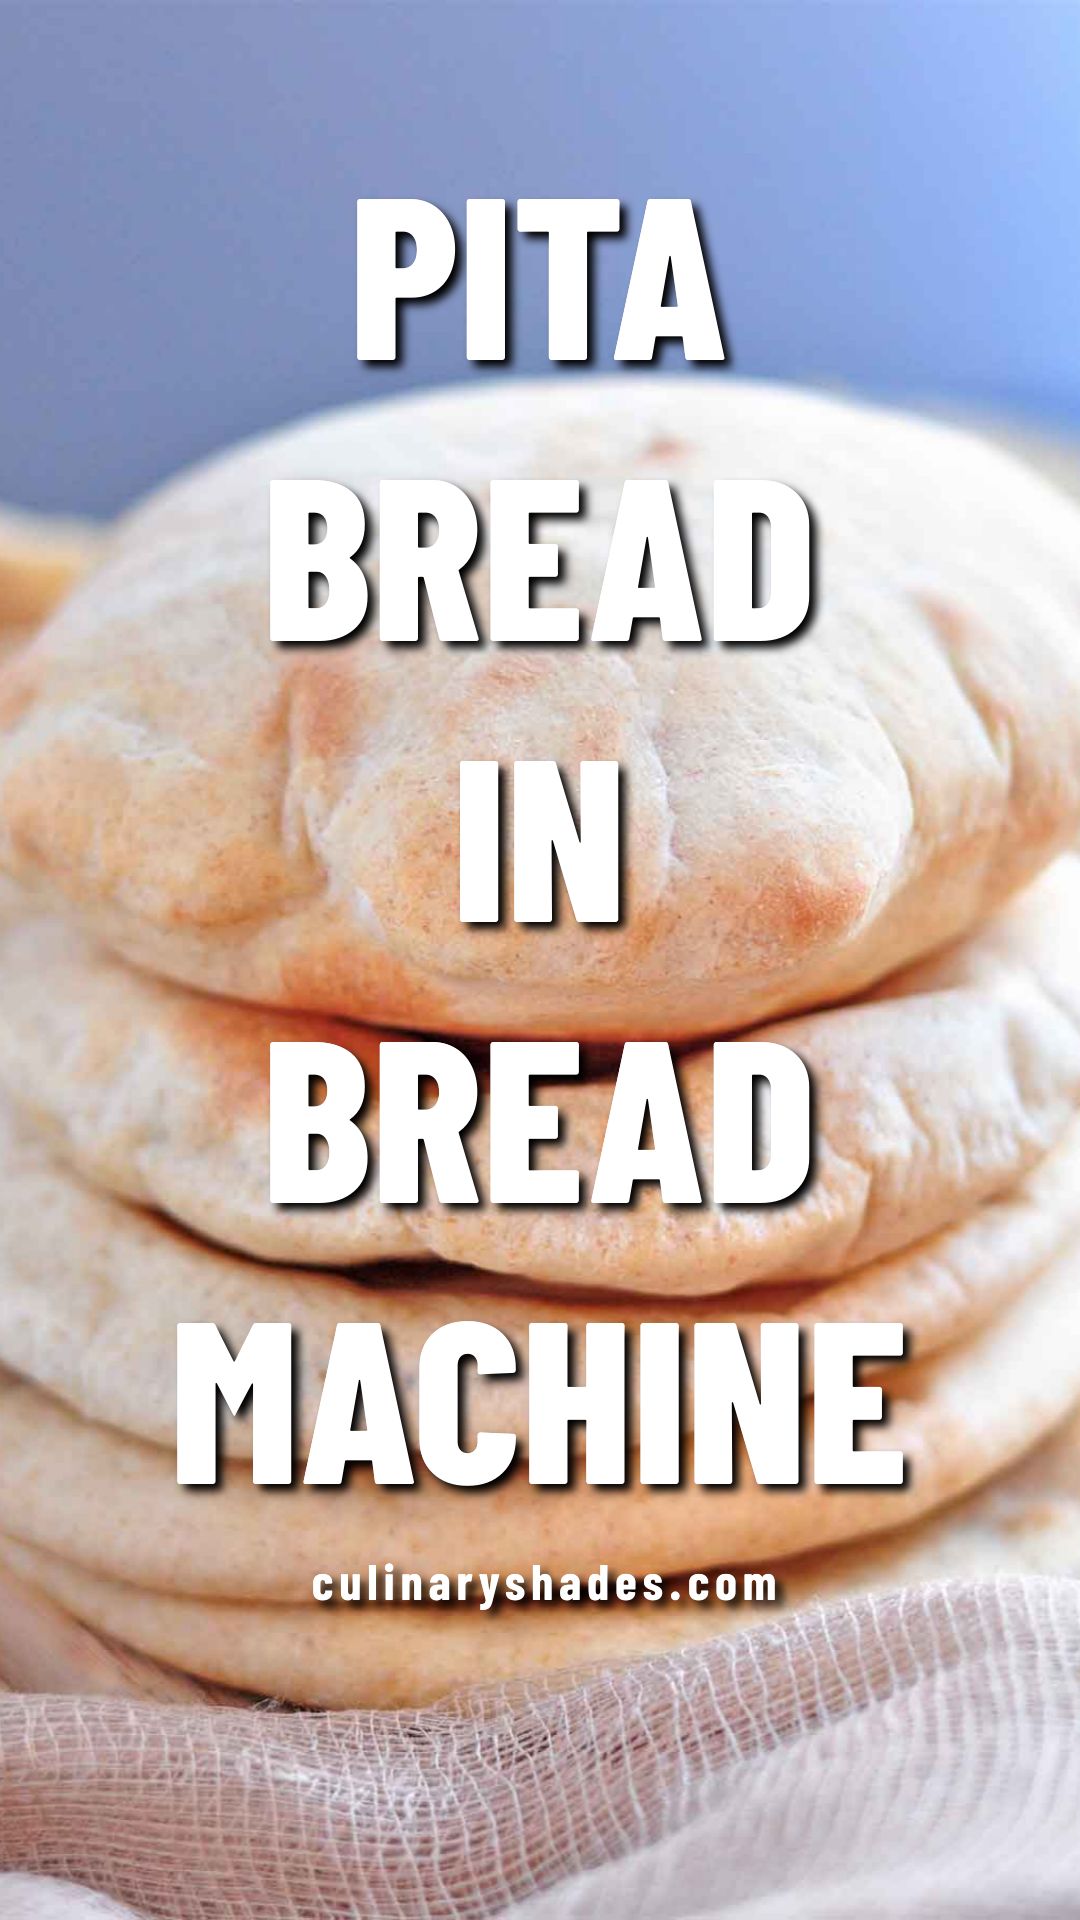 Pita Bread Maker